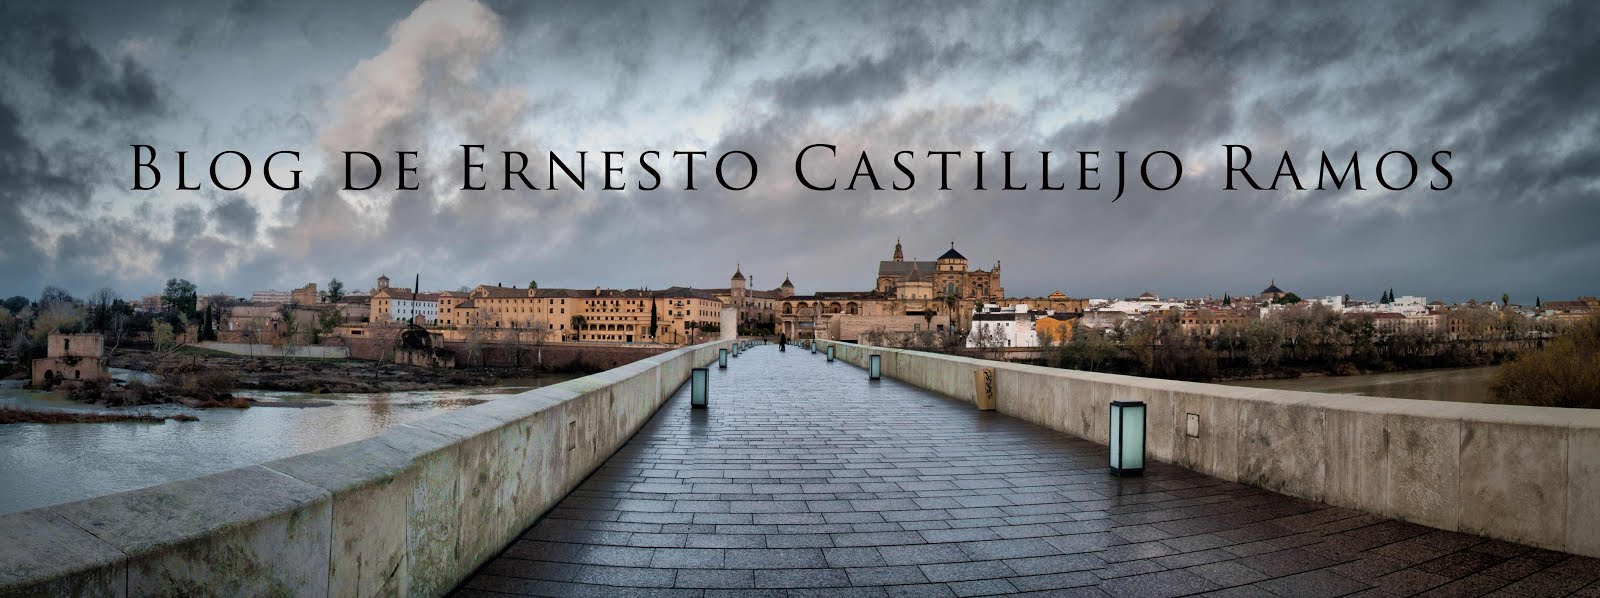 Blog de Ernesto Castillejo